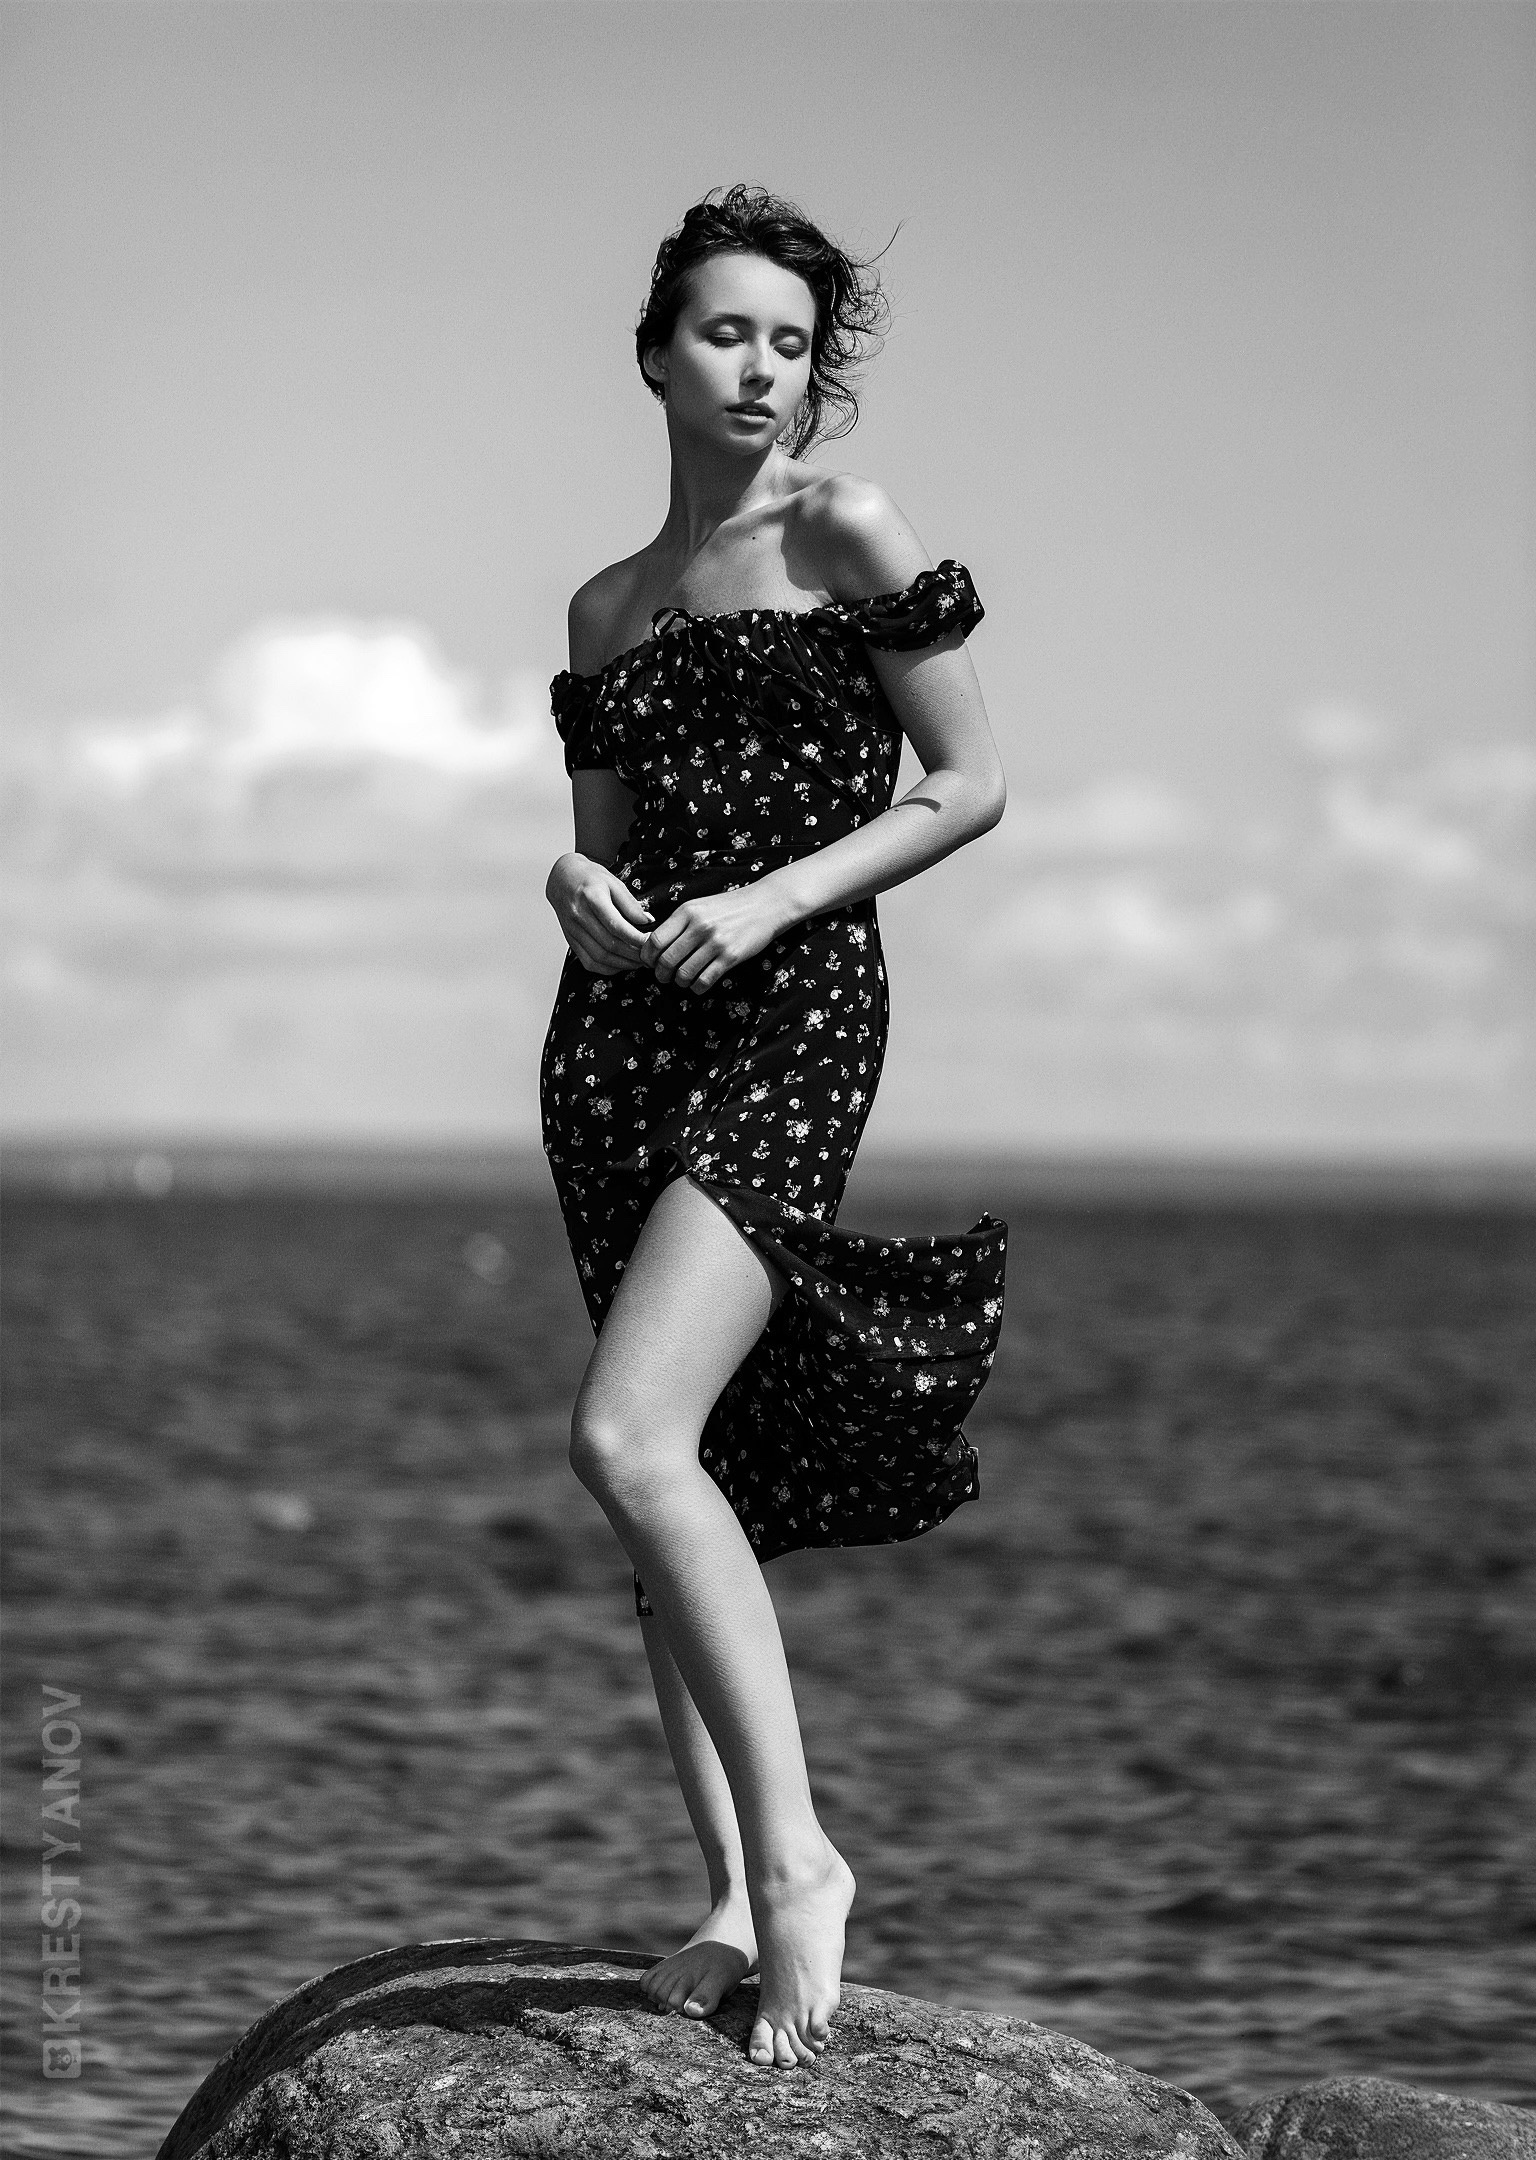 Evgeniy Krestyanov Women Dress Barefoot Monochrome 1536x2160